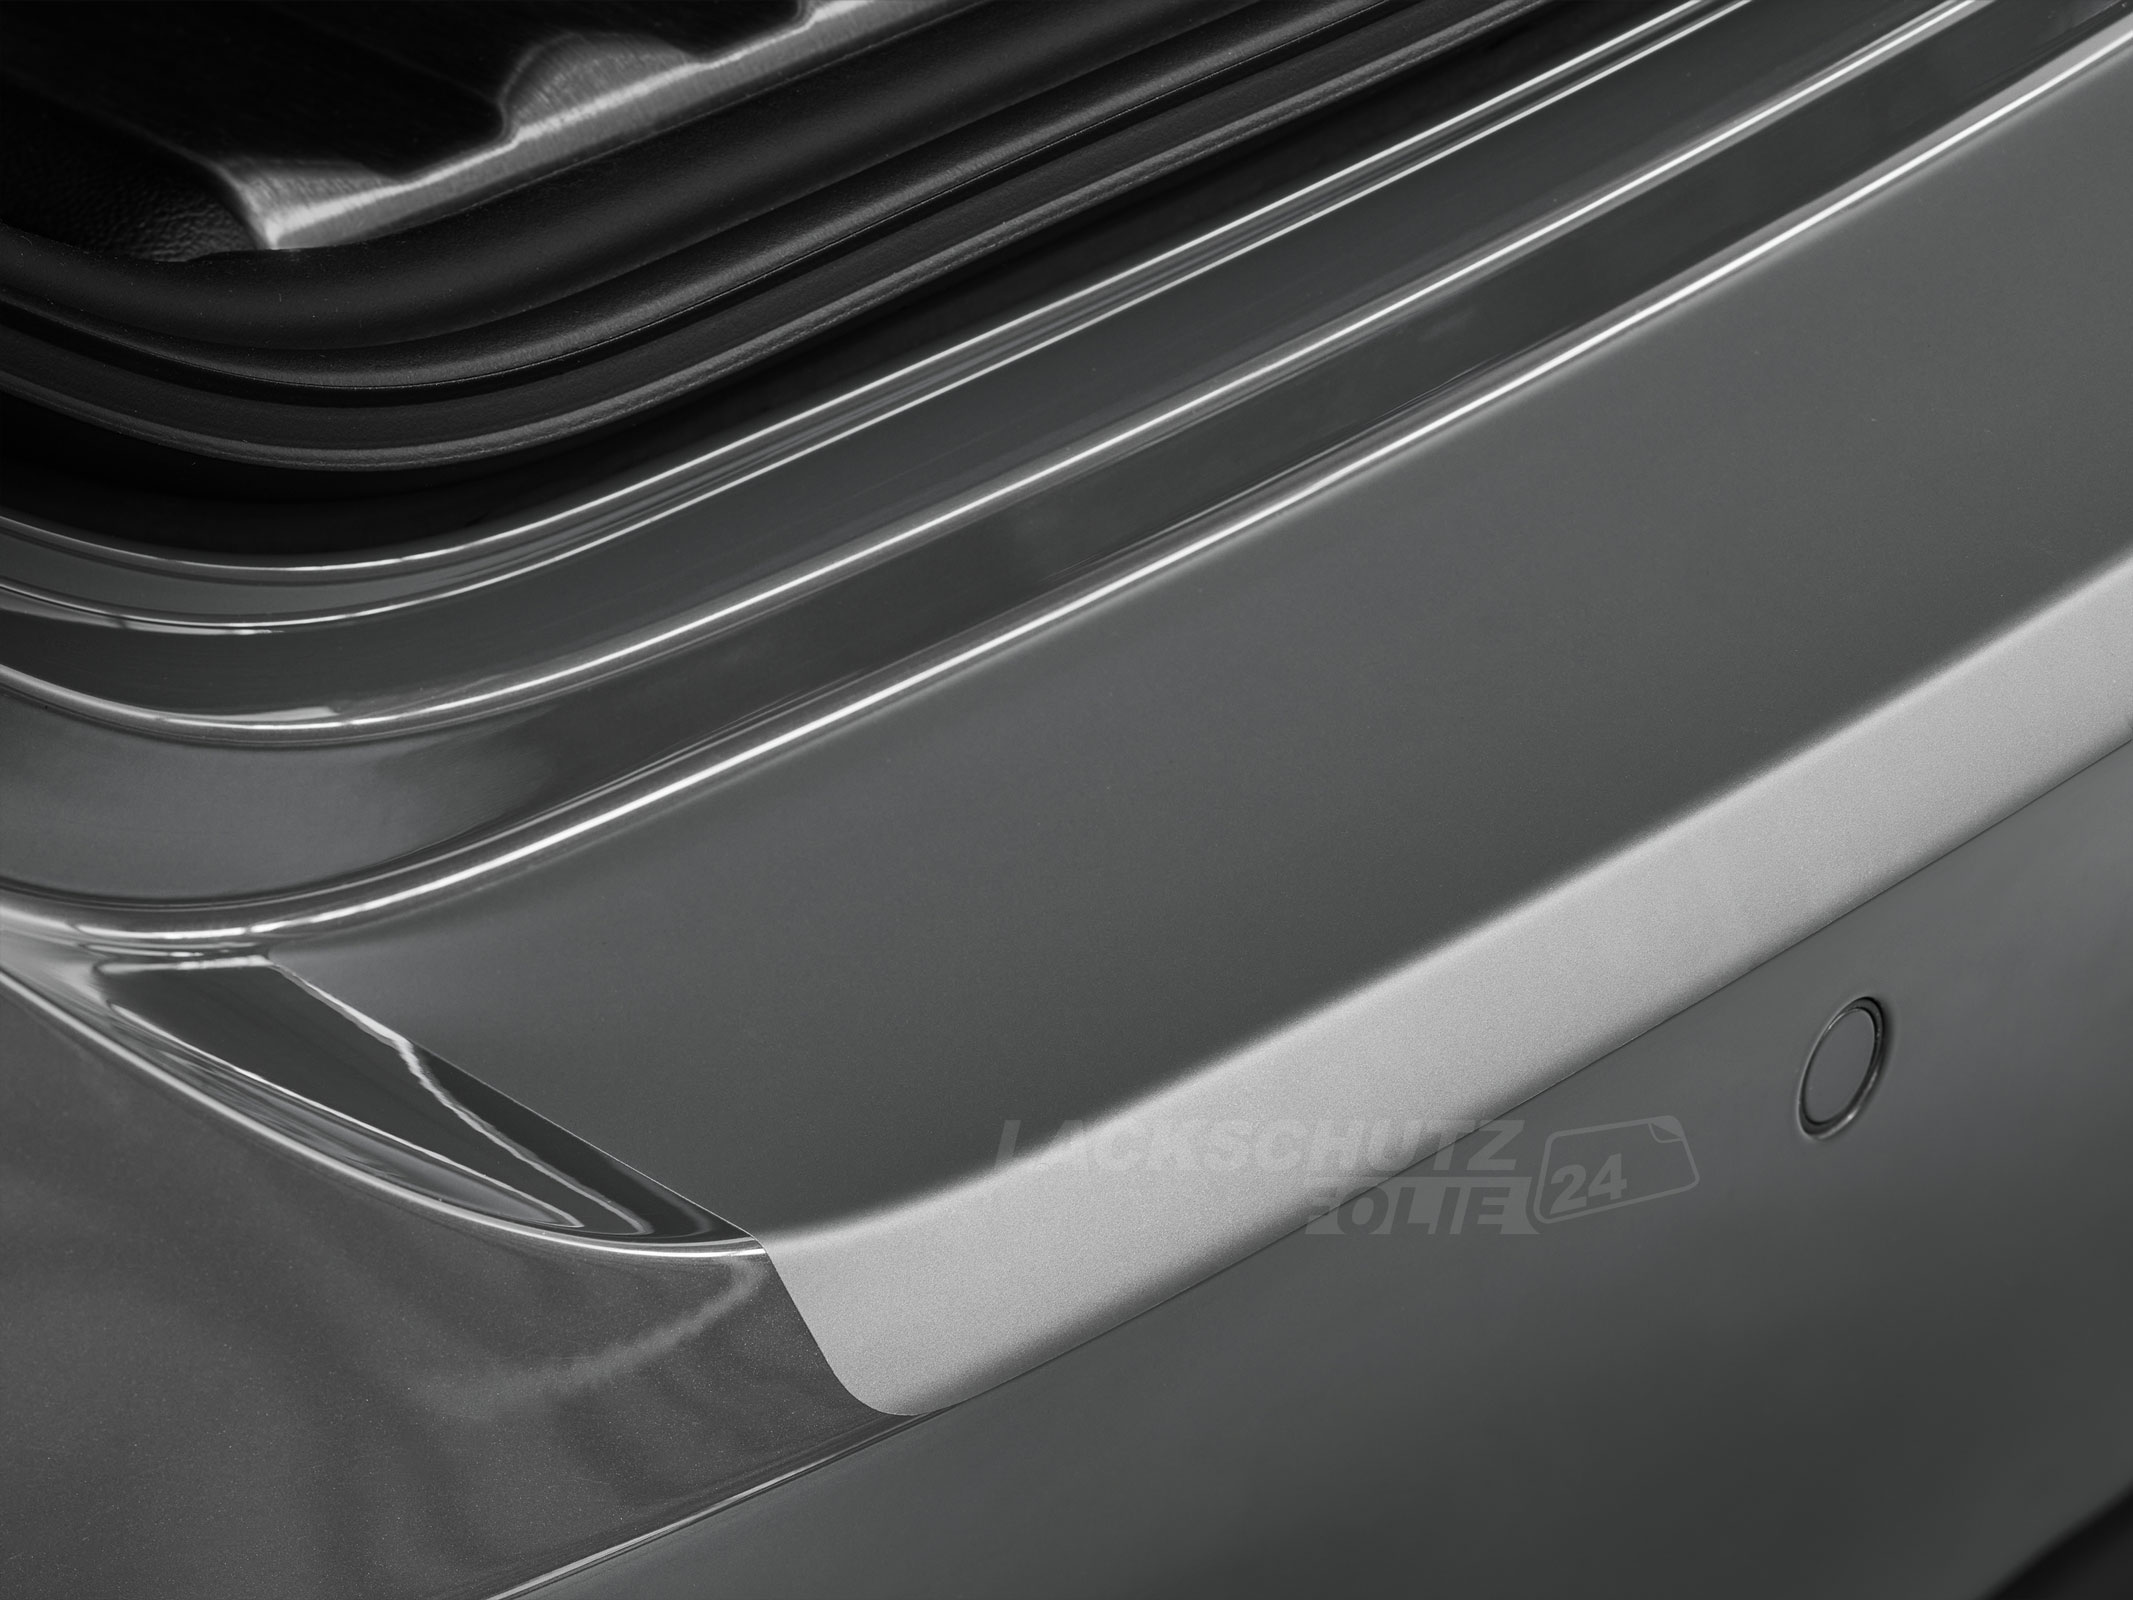 Ladekantenschutzfolie - Transparent Glatt MATT 110 µm stark  für BMW X5 Typ G05, ab BJ 11/2018